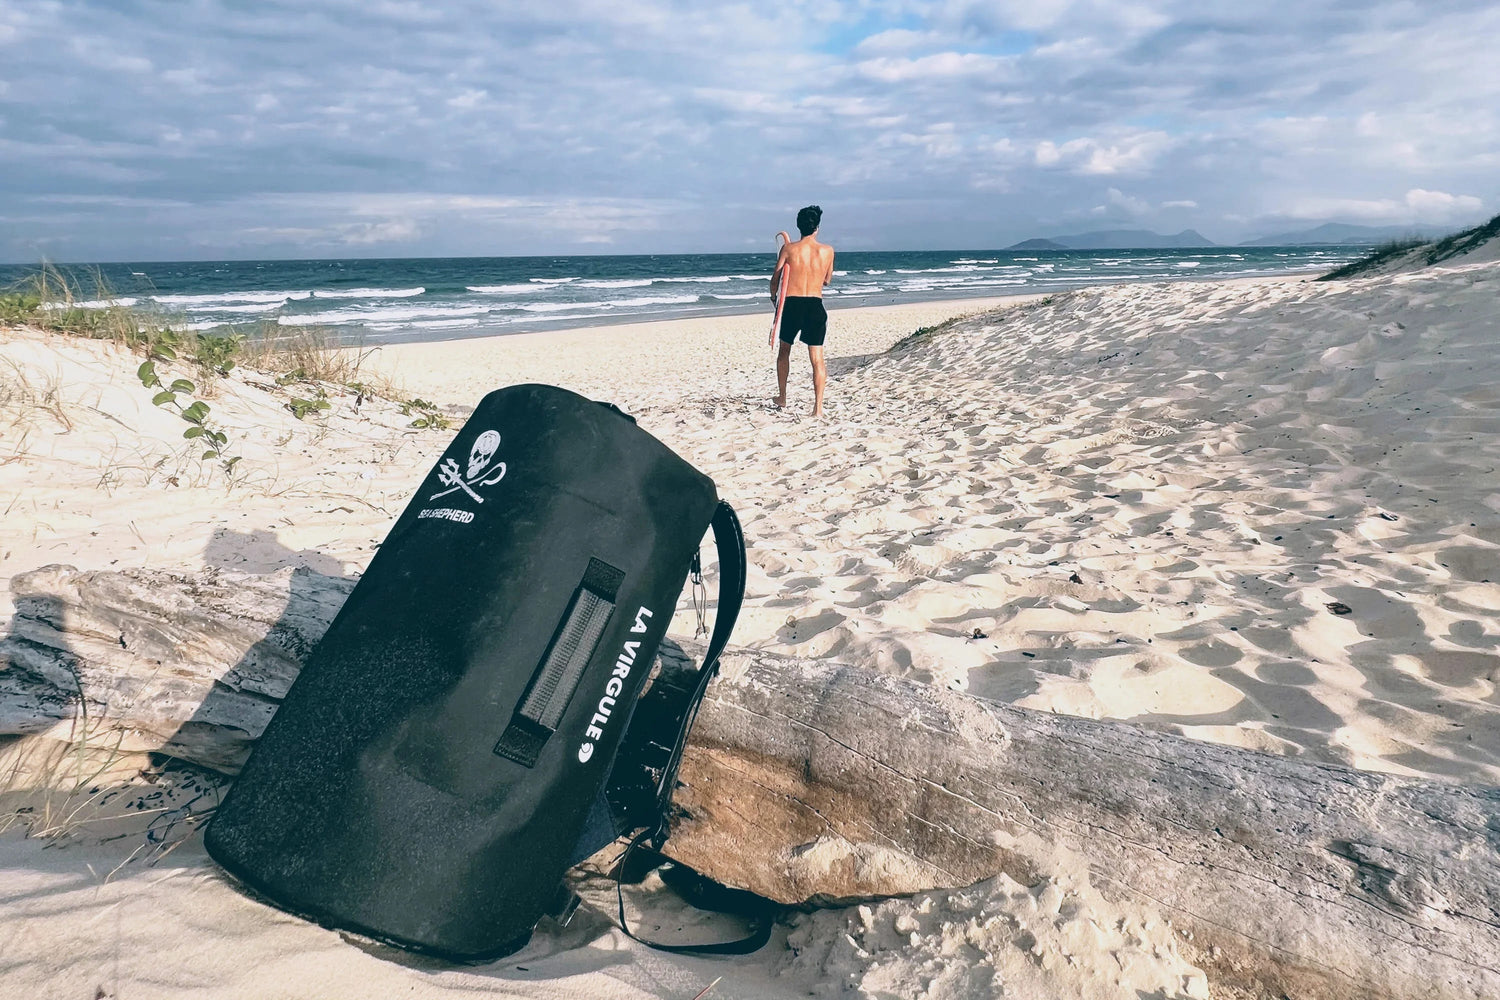 Notre sac en collaboration avec Sea Shepherd sur une plage déserte